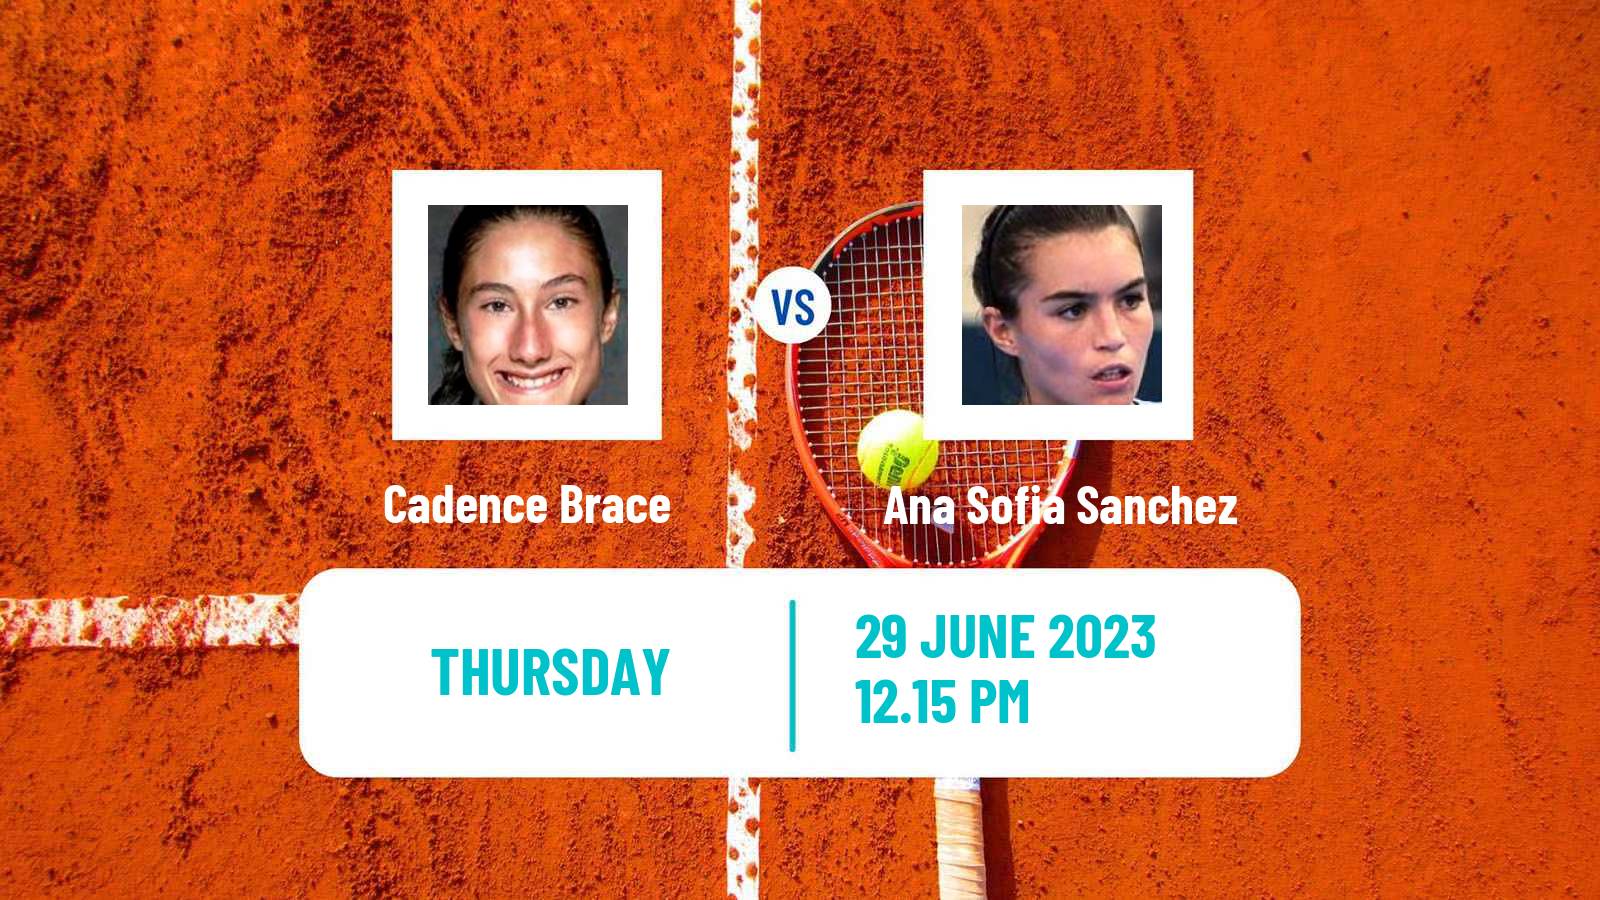 Tennis ITF W25 Santo Domingo 4 Women Cadence Brace - Ana Sofia Sanchez